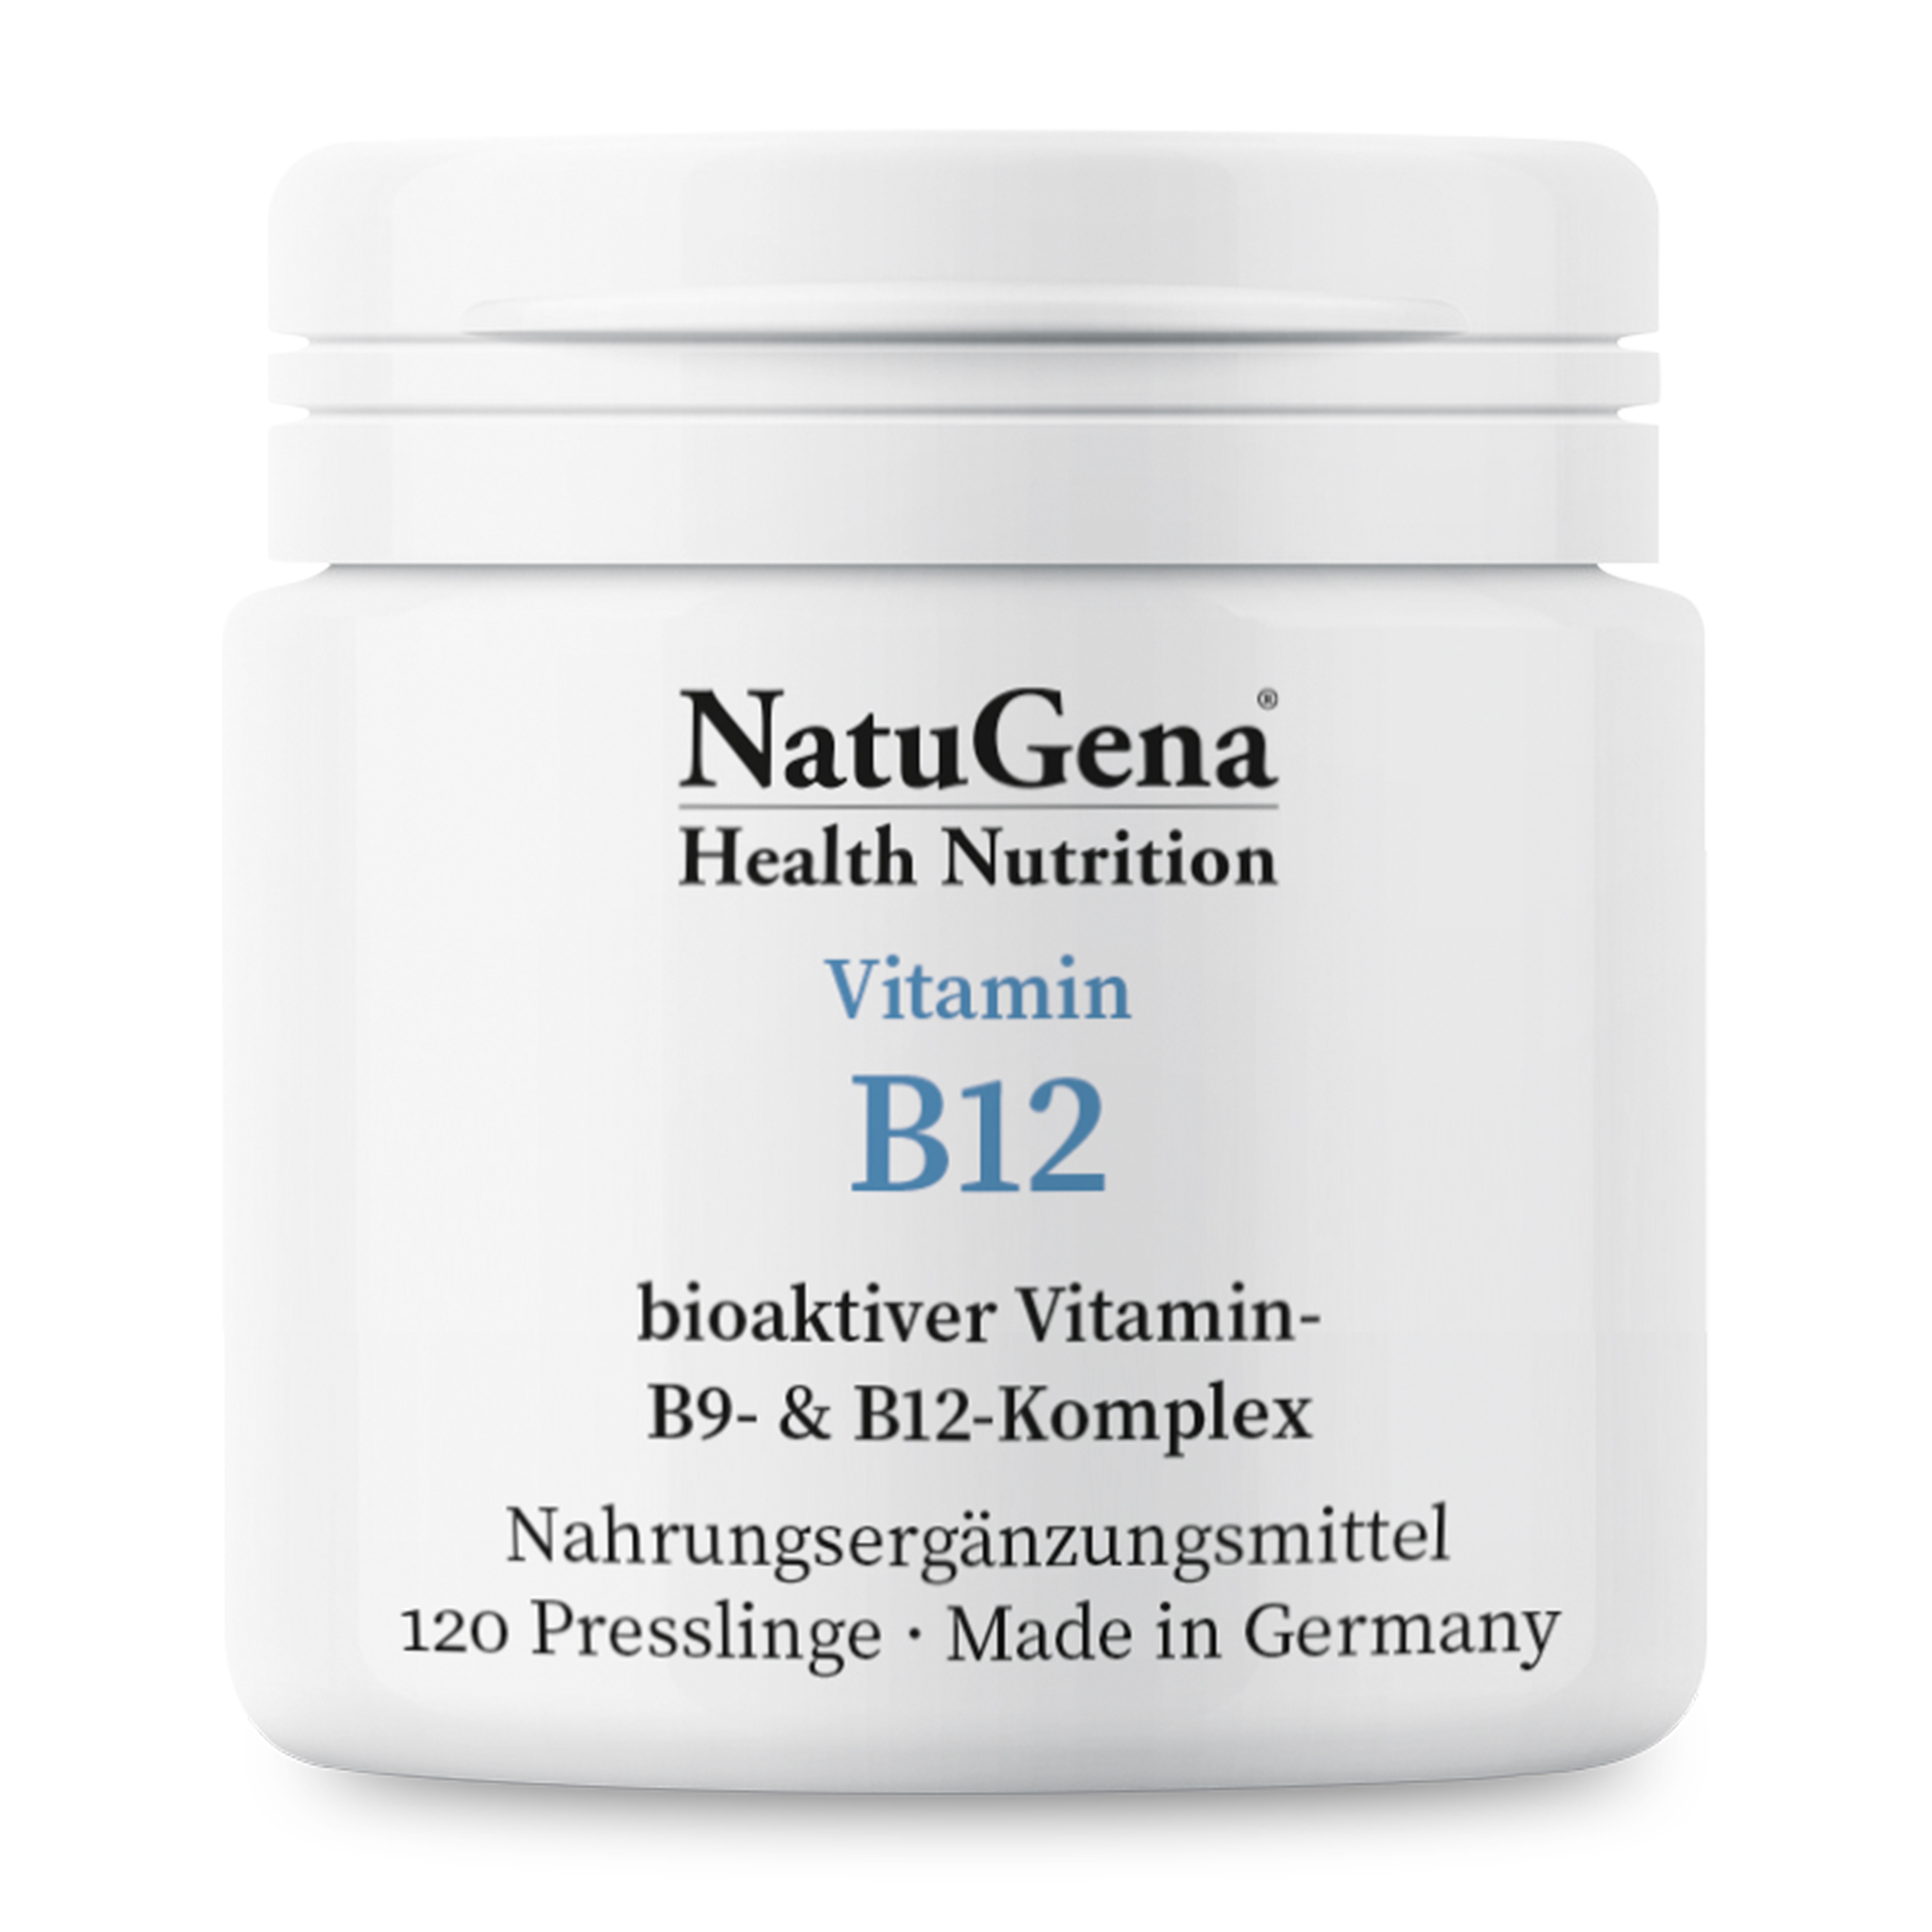 NatuGena Vitamin B12 Tabletten